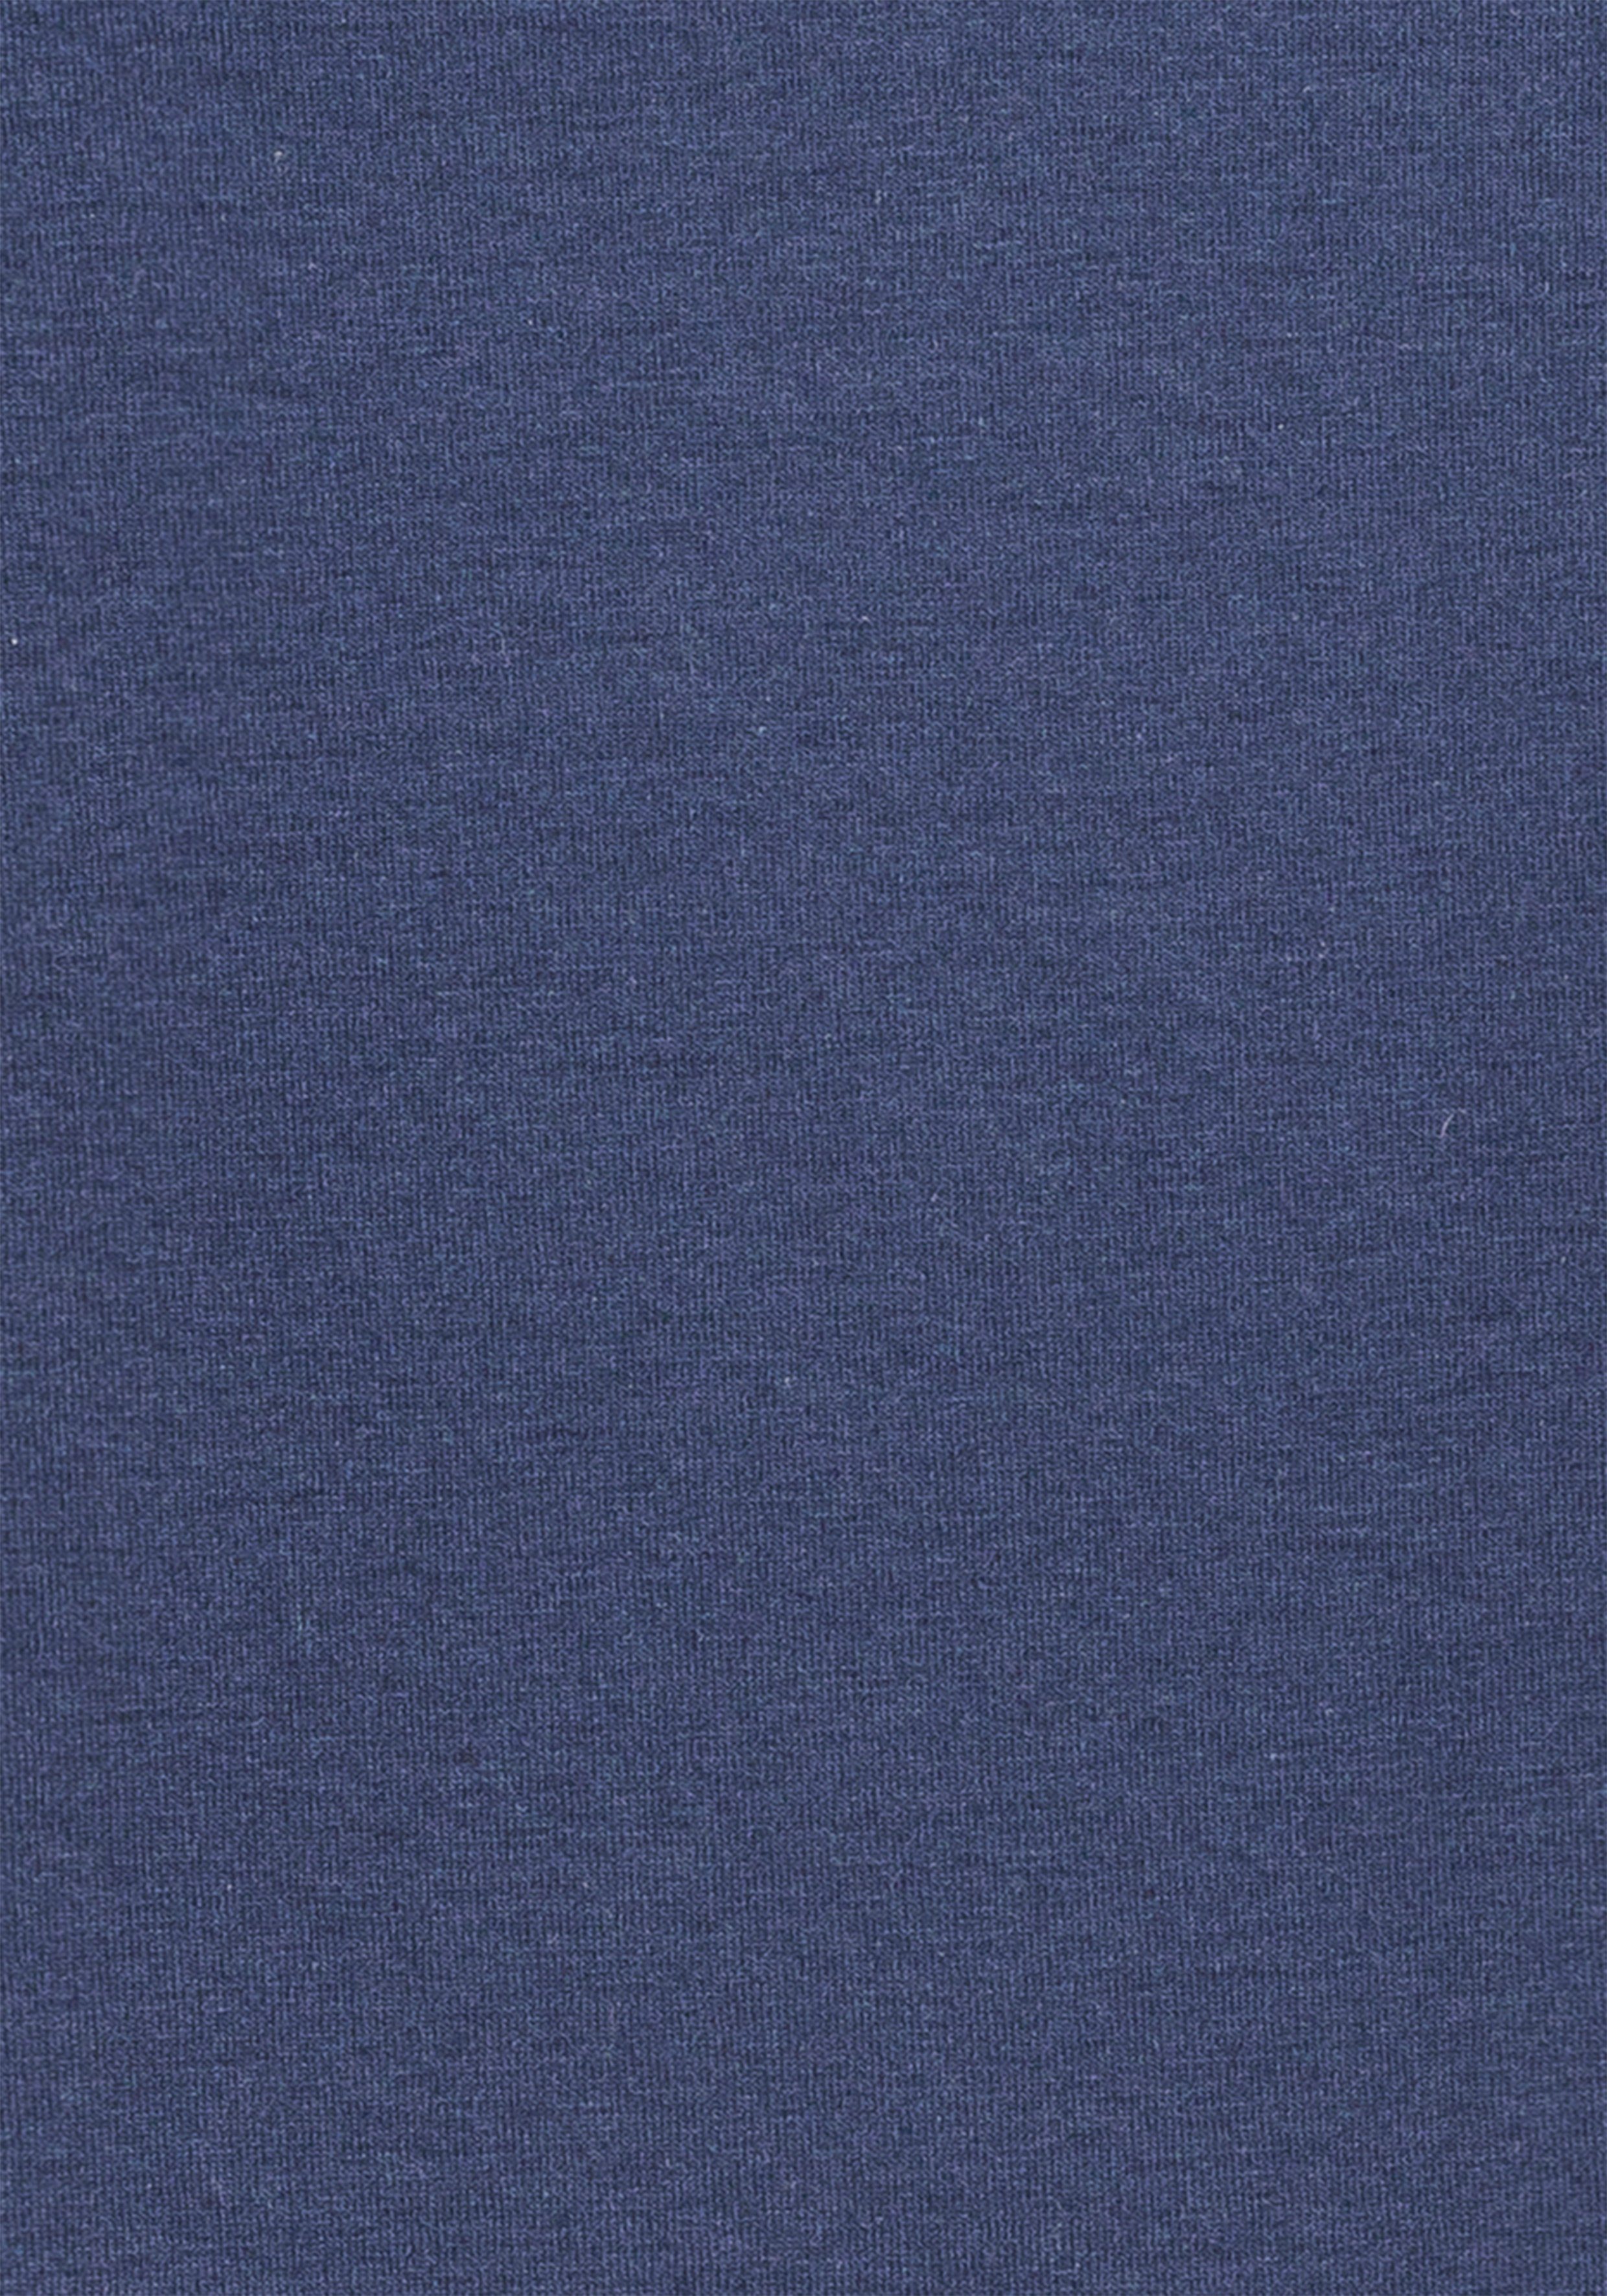 Bruno Banani T-Shirt (Packung, 3-tlg) Rundhals-Ausschnitt petrol grau-meliert, navy, mit